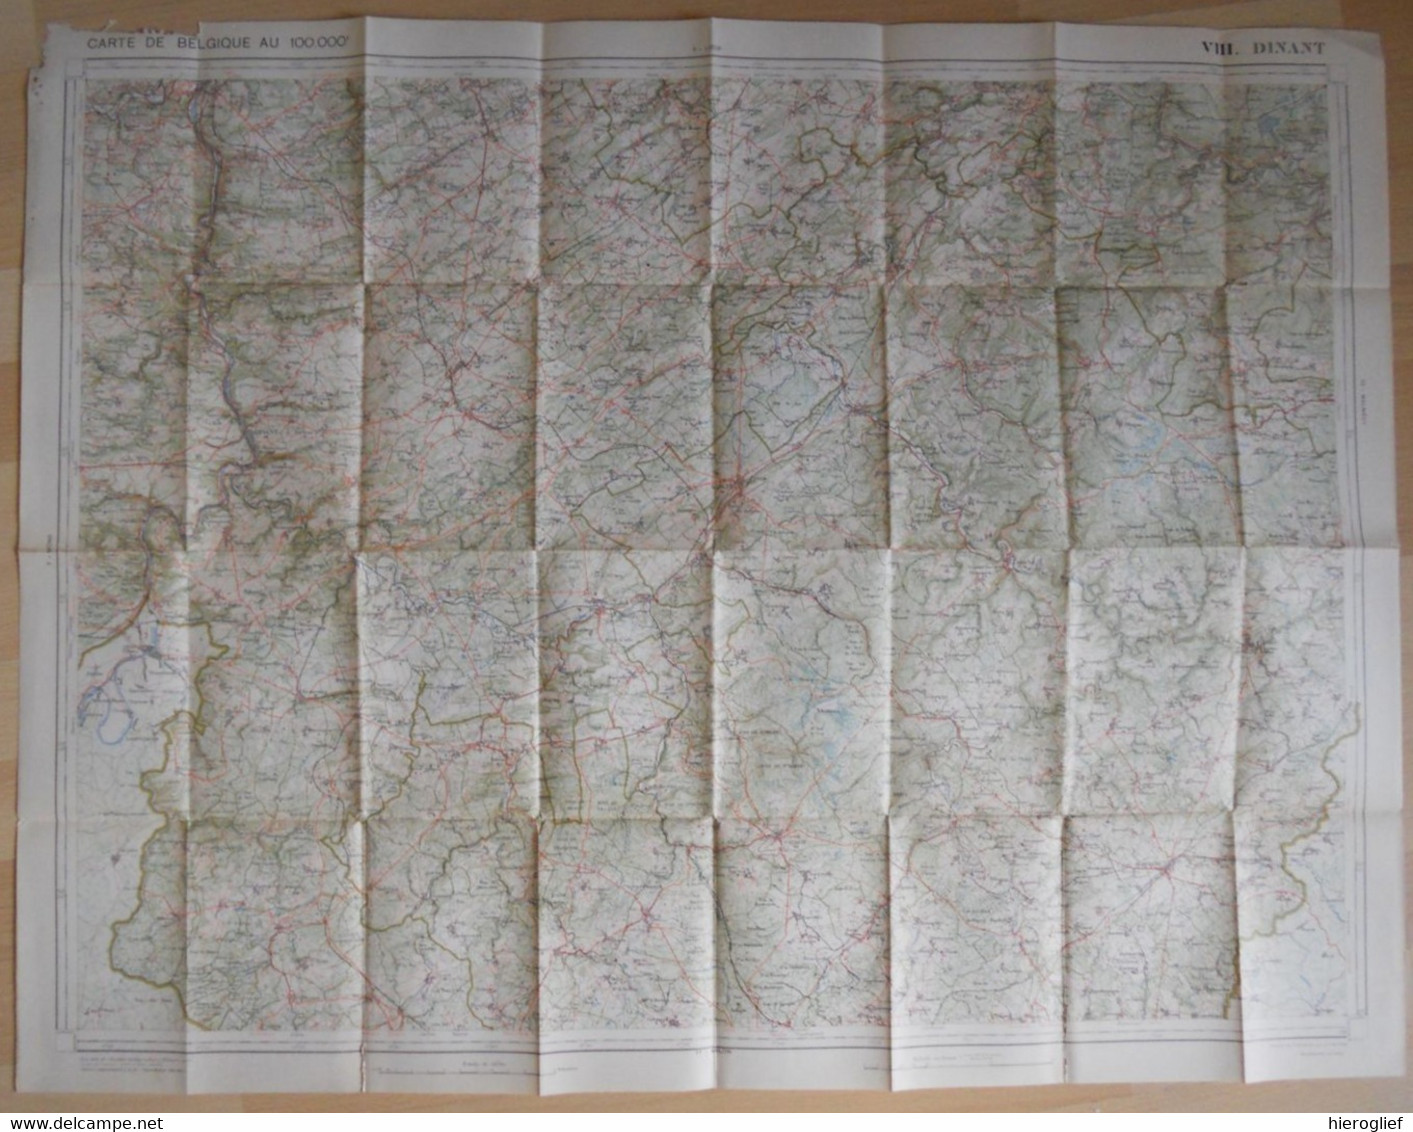 Carte De BELGIQUE Nr 8 DINANT Institut Cartographique Militaire Impression Litho 1933 Bastogne Houfalize La Roche Nadrin - Carte Topografiche